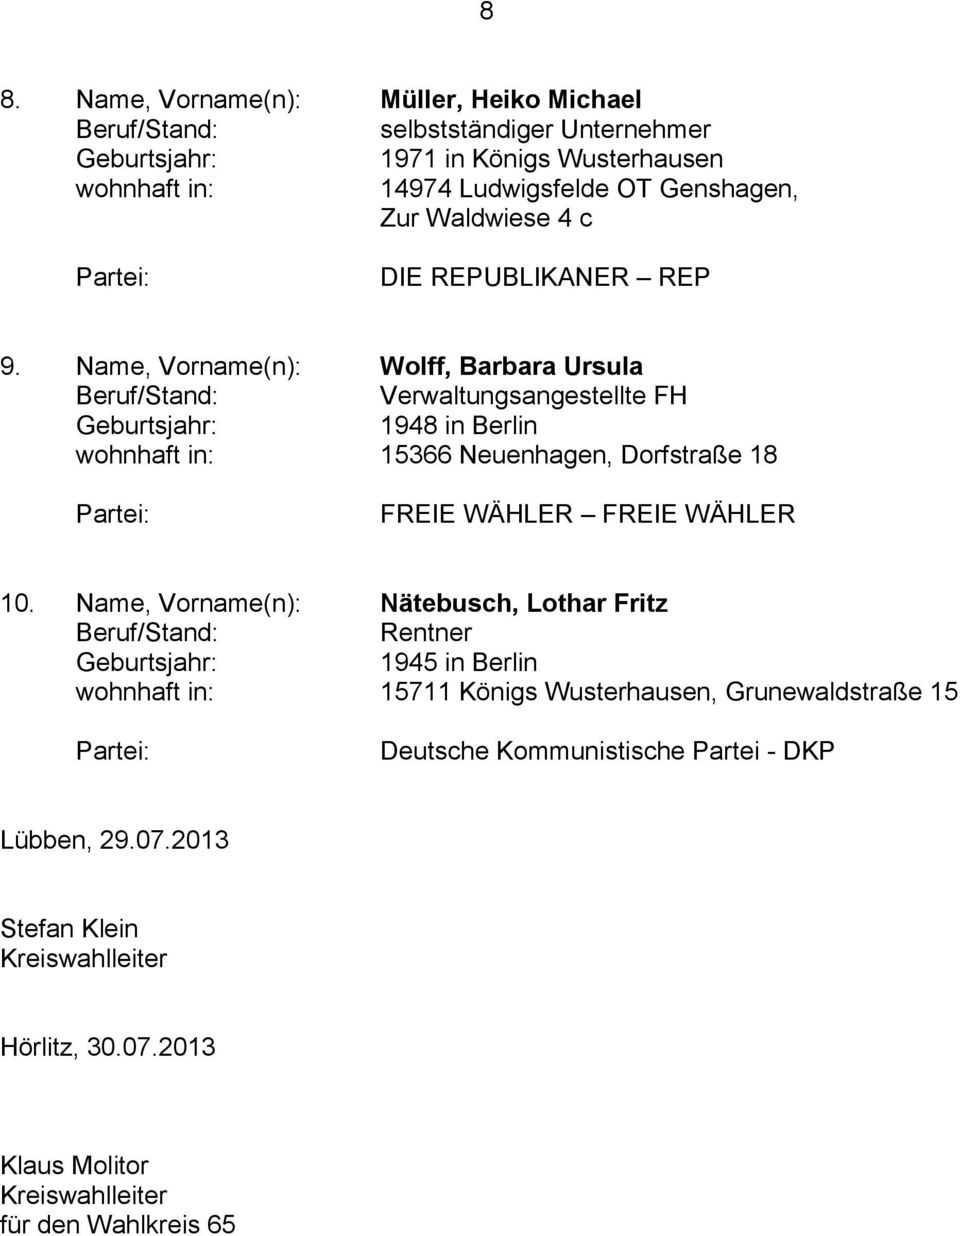 Name, Vorname(n): Wolff, Barbara Ursula Verwaltungsangestellte FH 1948 in Berlin wohnhaft in: 15366 Neuenhagen, Dorfstraße 18 FREIE WÄHLER FREIE WÄHLER 10.